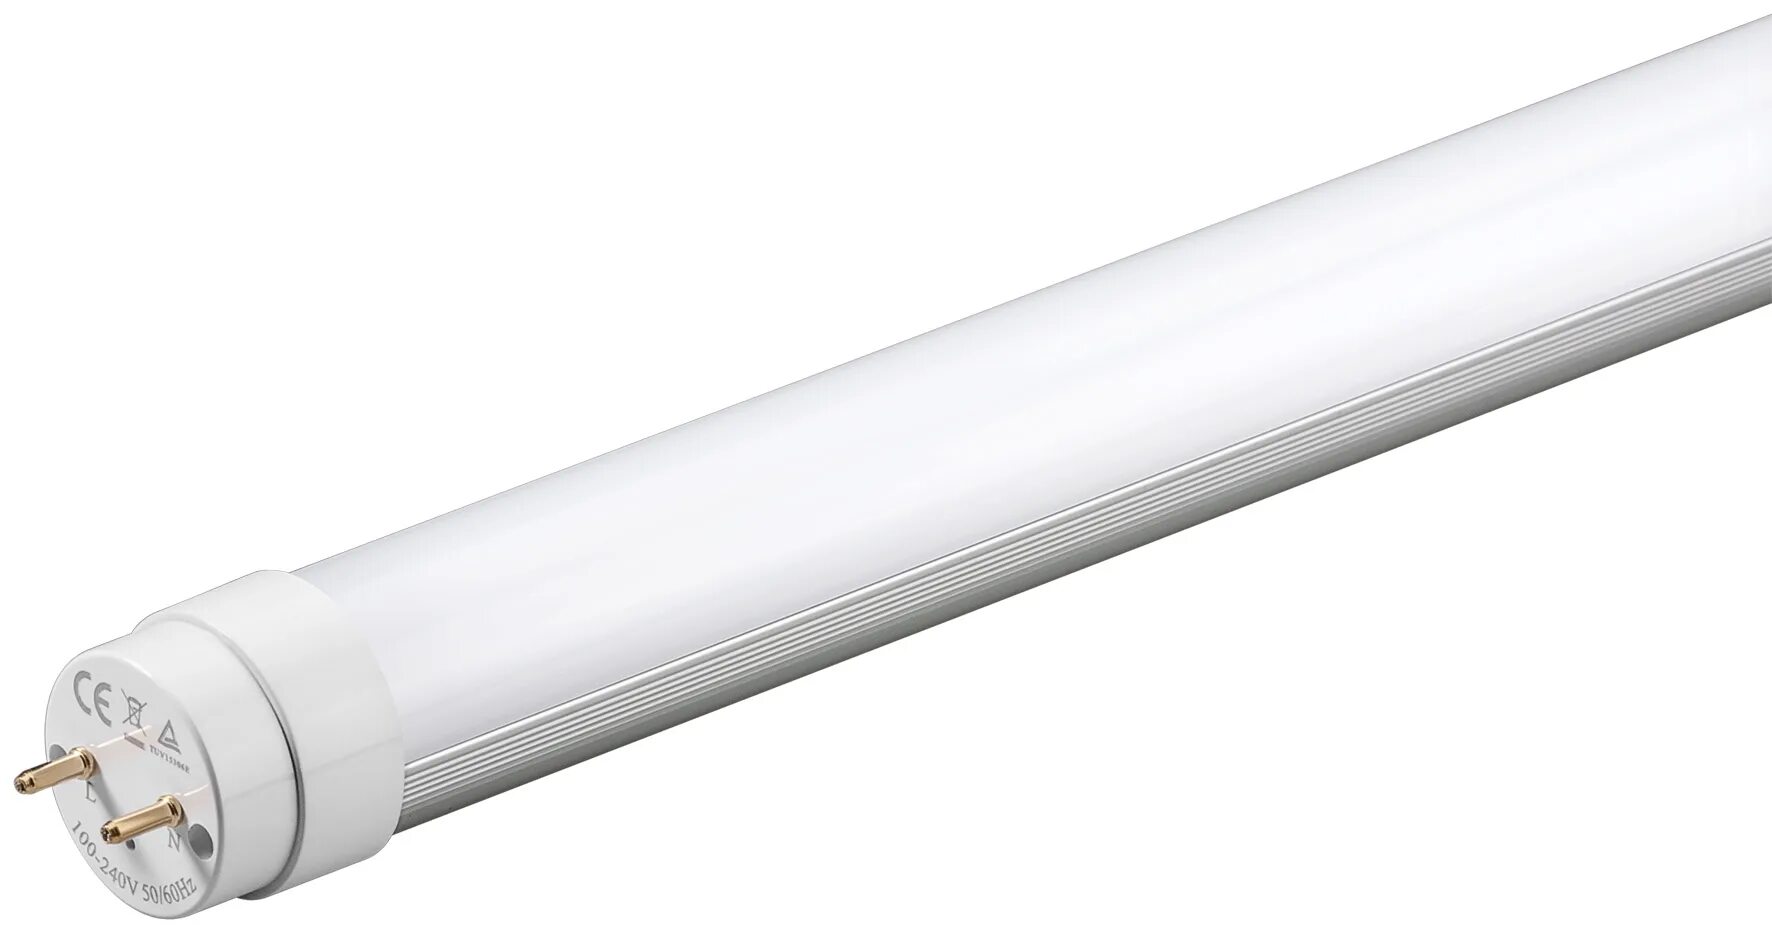 Т 8 лед. Лампа светодиодная led tube t8 20w 600k 220-240vac. G13 t8 18w 220v 1200mm Glass. Лампа светодиодная лампа g13 t8 600mm (60cm) 9w 400k 650k 100-250 v. Электролампа led tube -10w., цоколь g13.